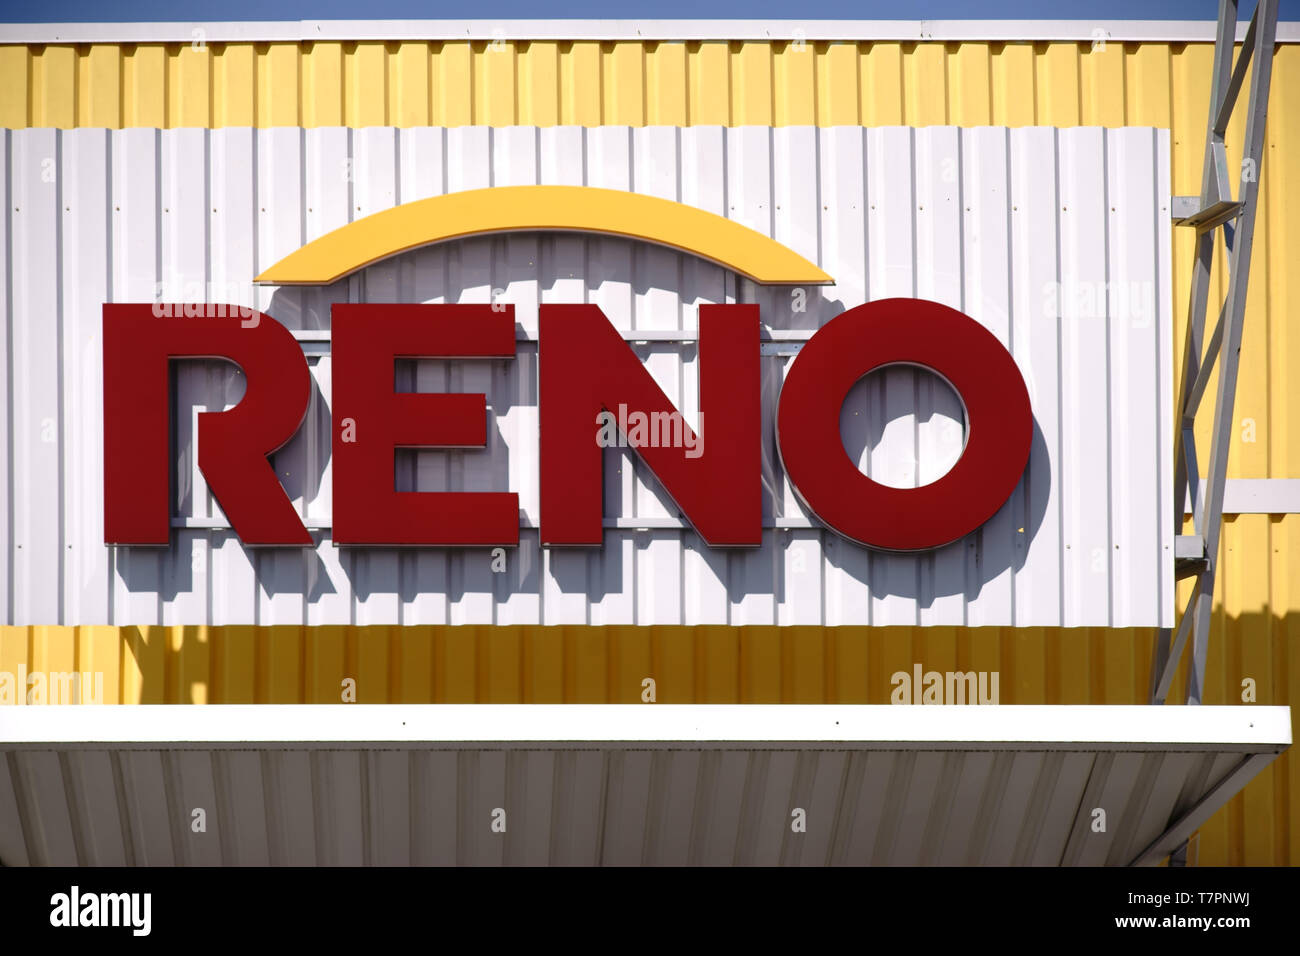 Pirmasens, Allemagne - 30 mars 2019 : modernes et colorées stridentes façade extérieure faite de métal ondulé d'un magasin de chaussures de chaussures Reno GmbH avec logo Banque D'Images